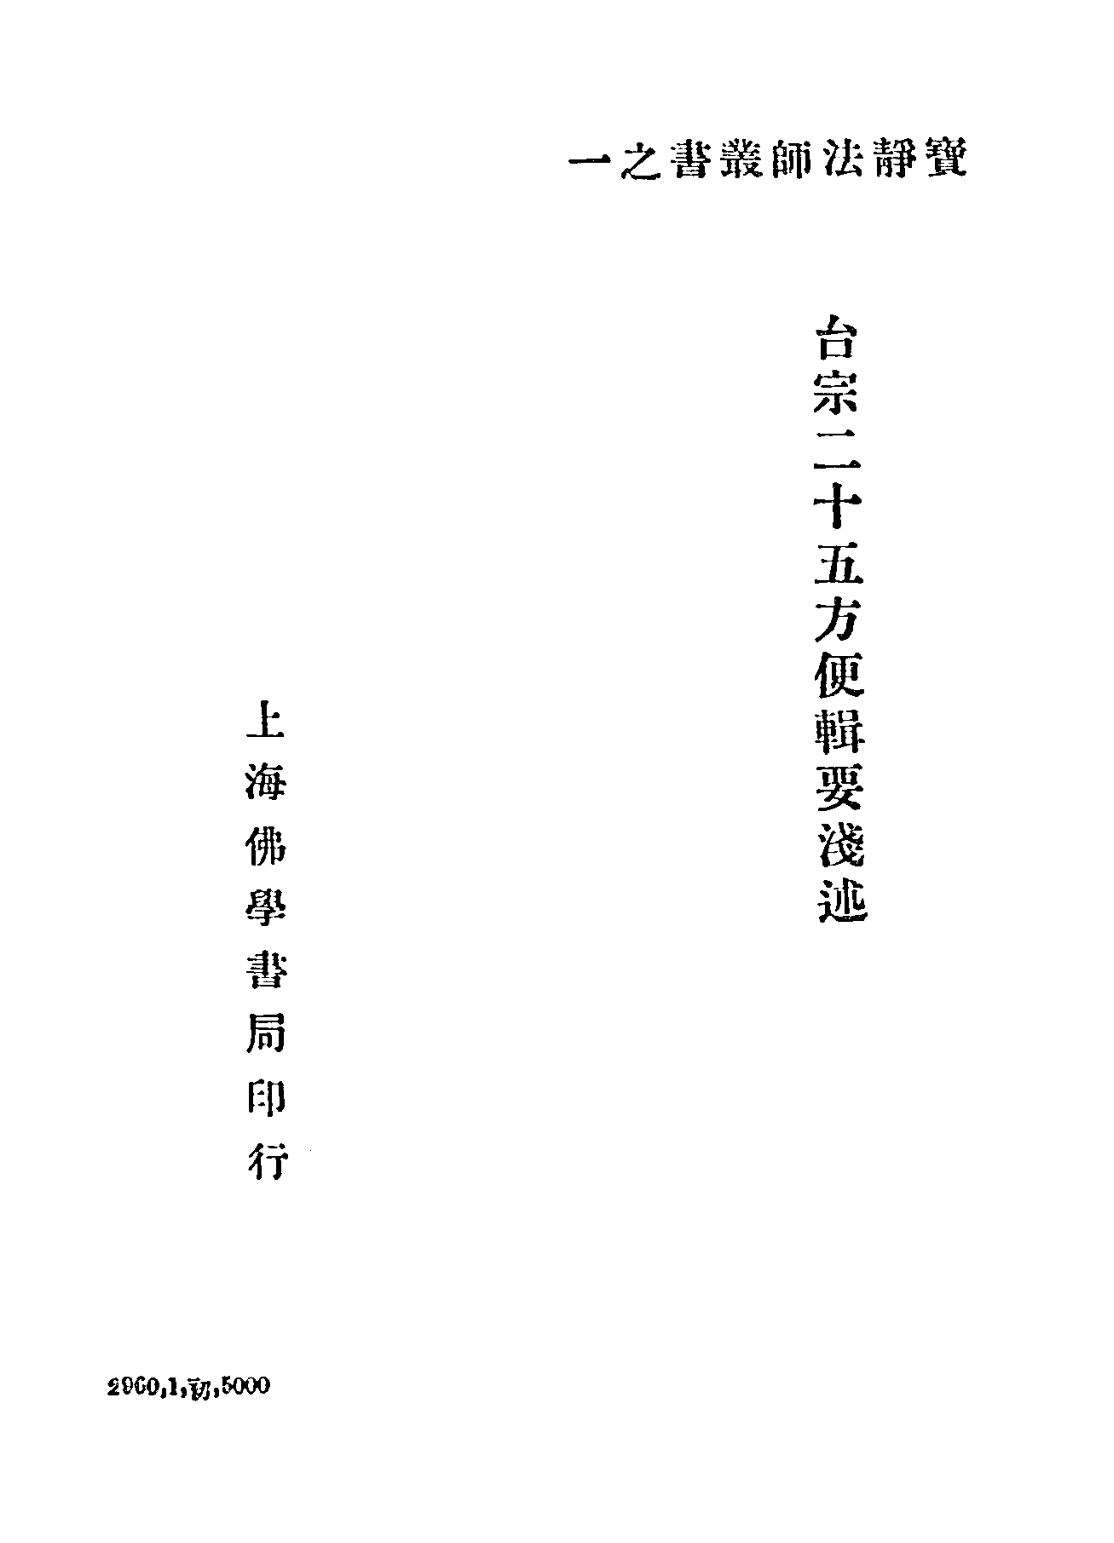 File:Taizong ershi wu fangbian jiyao qianshu 1933.png